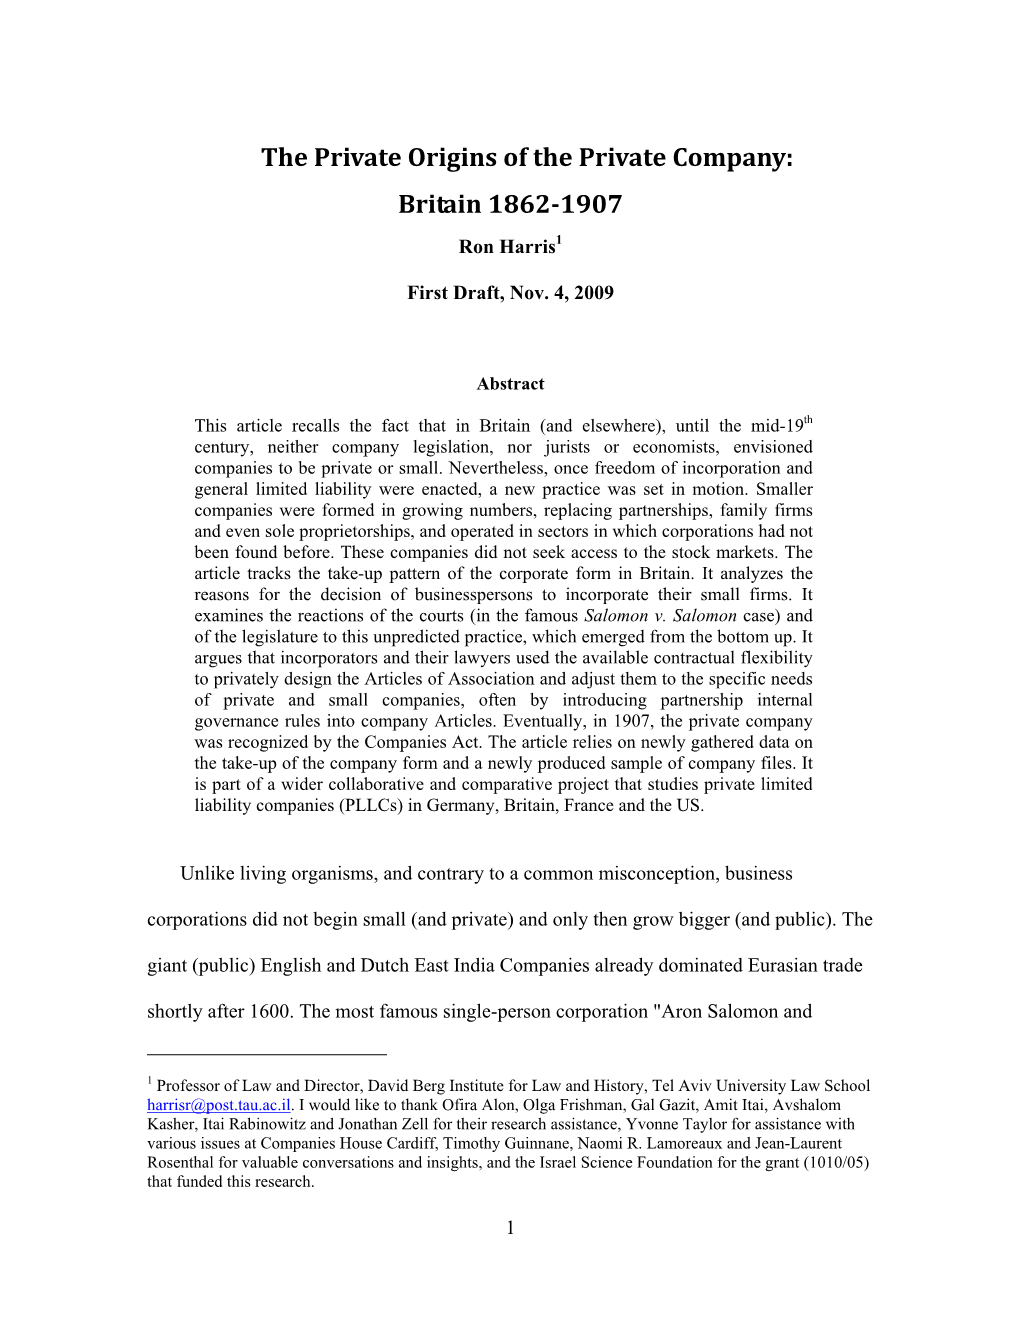 The Private Origins of the Private Company: Britain 1862-1907